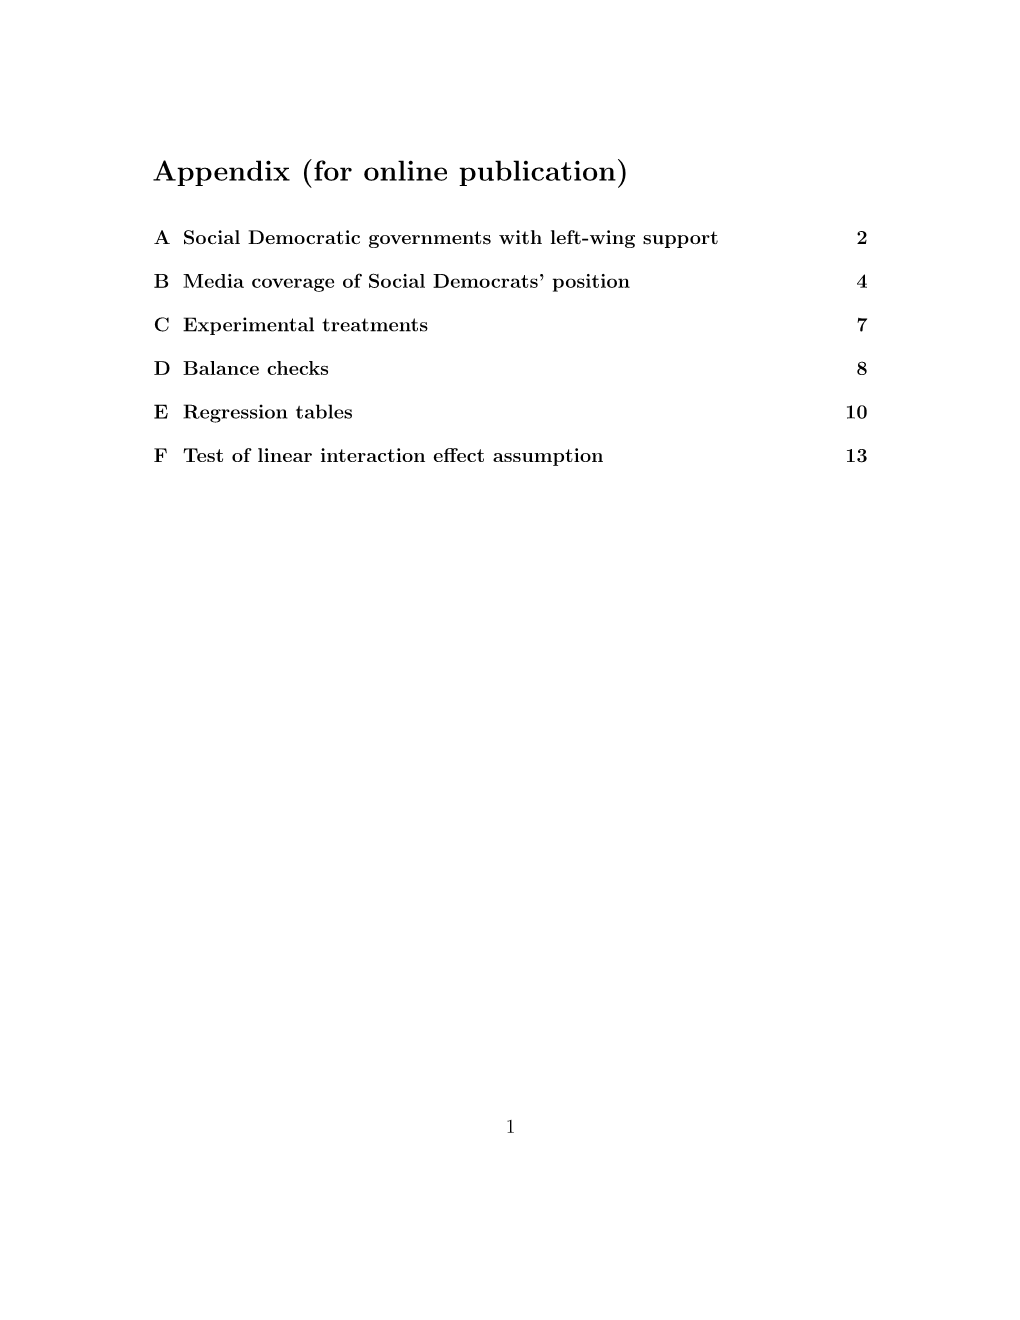 Appendix (For Online Publication)